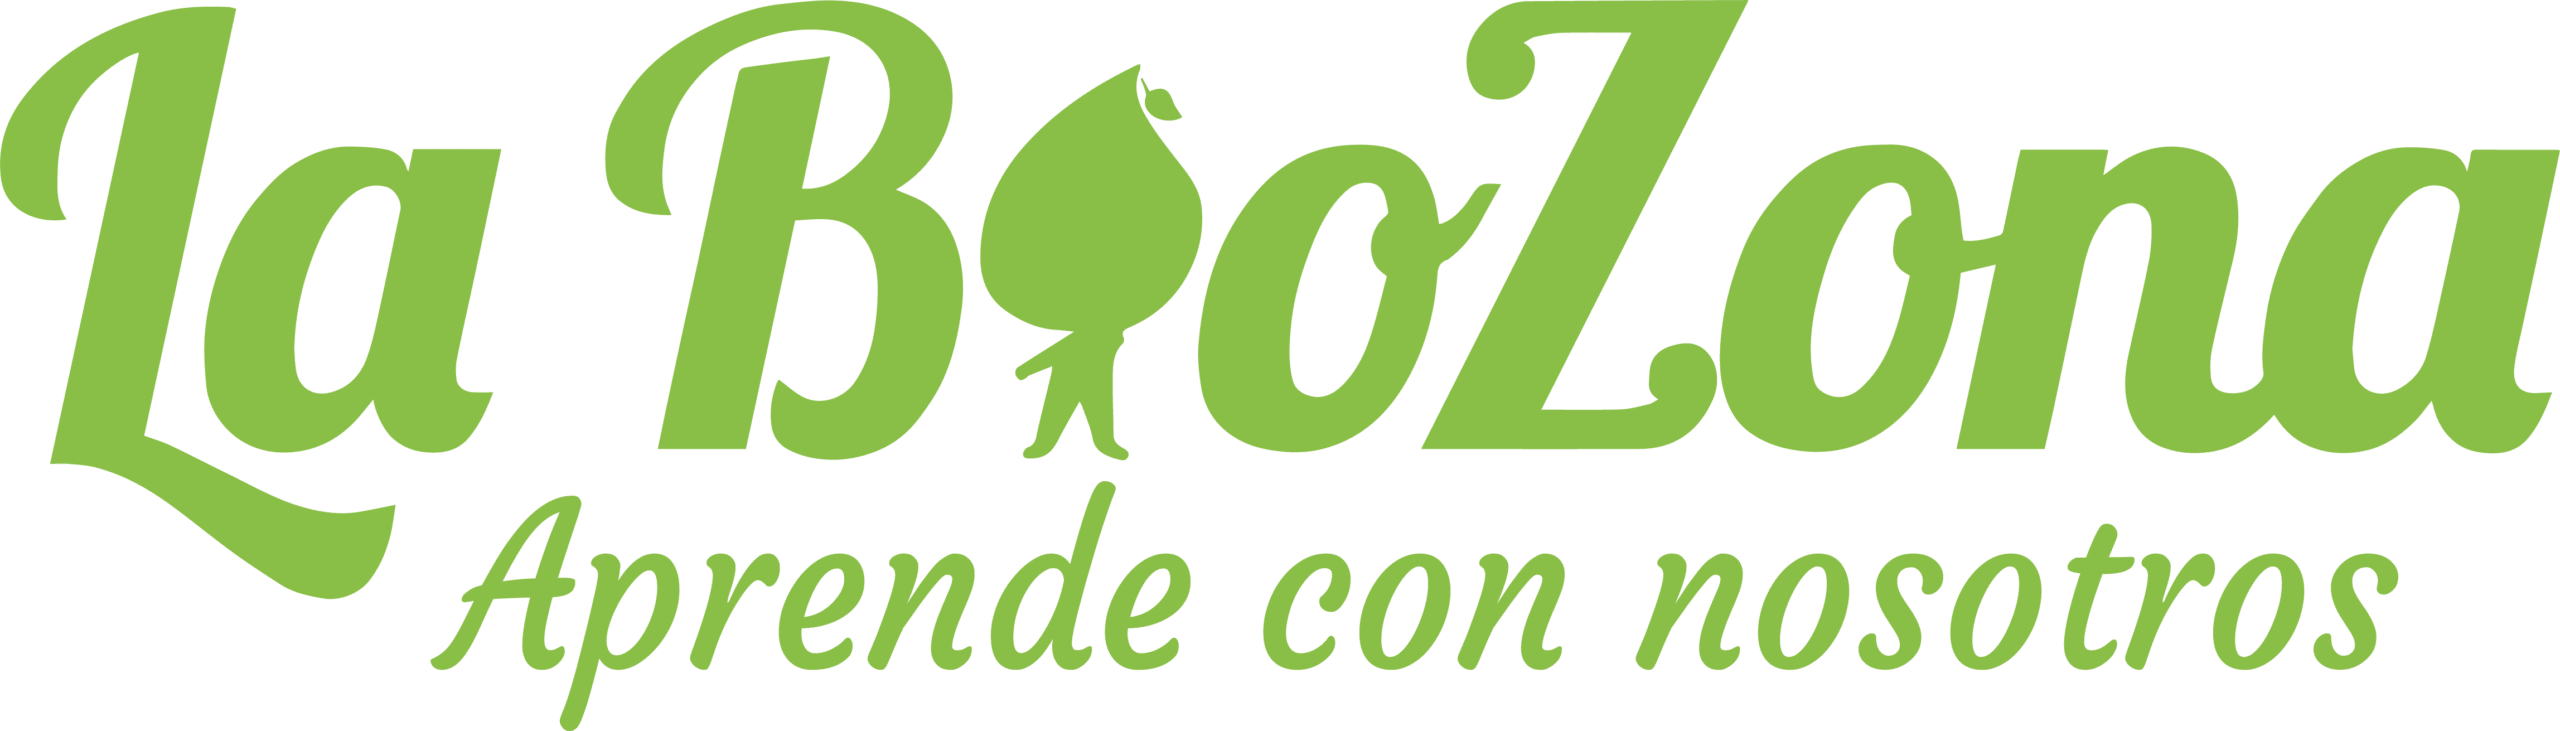 Logo de la academia - La BioZona - Yellow green